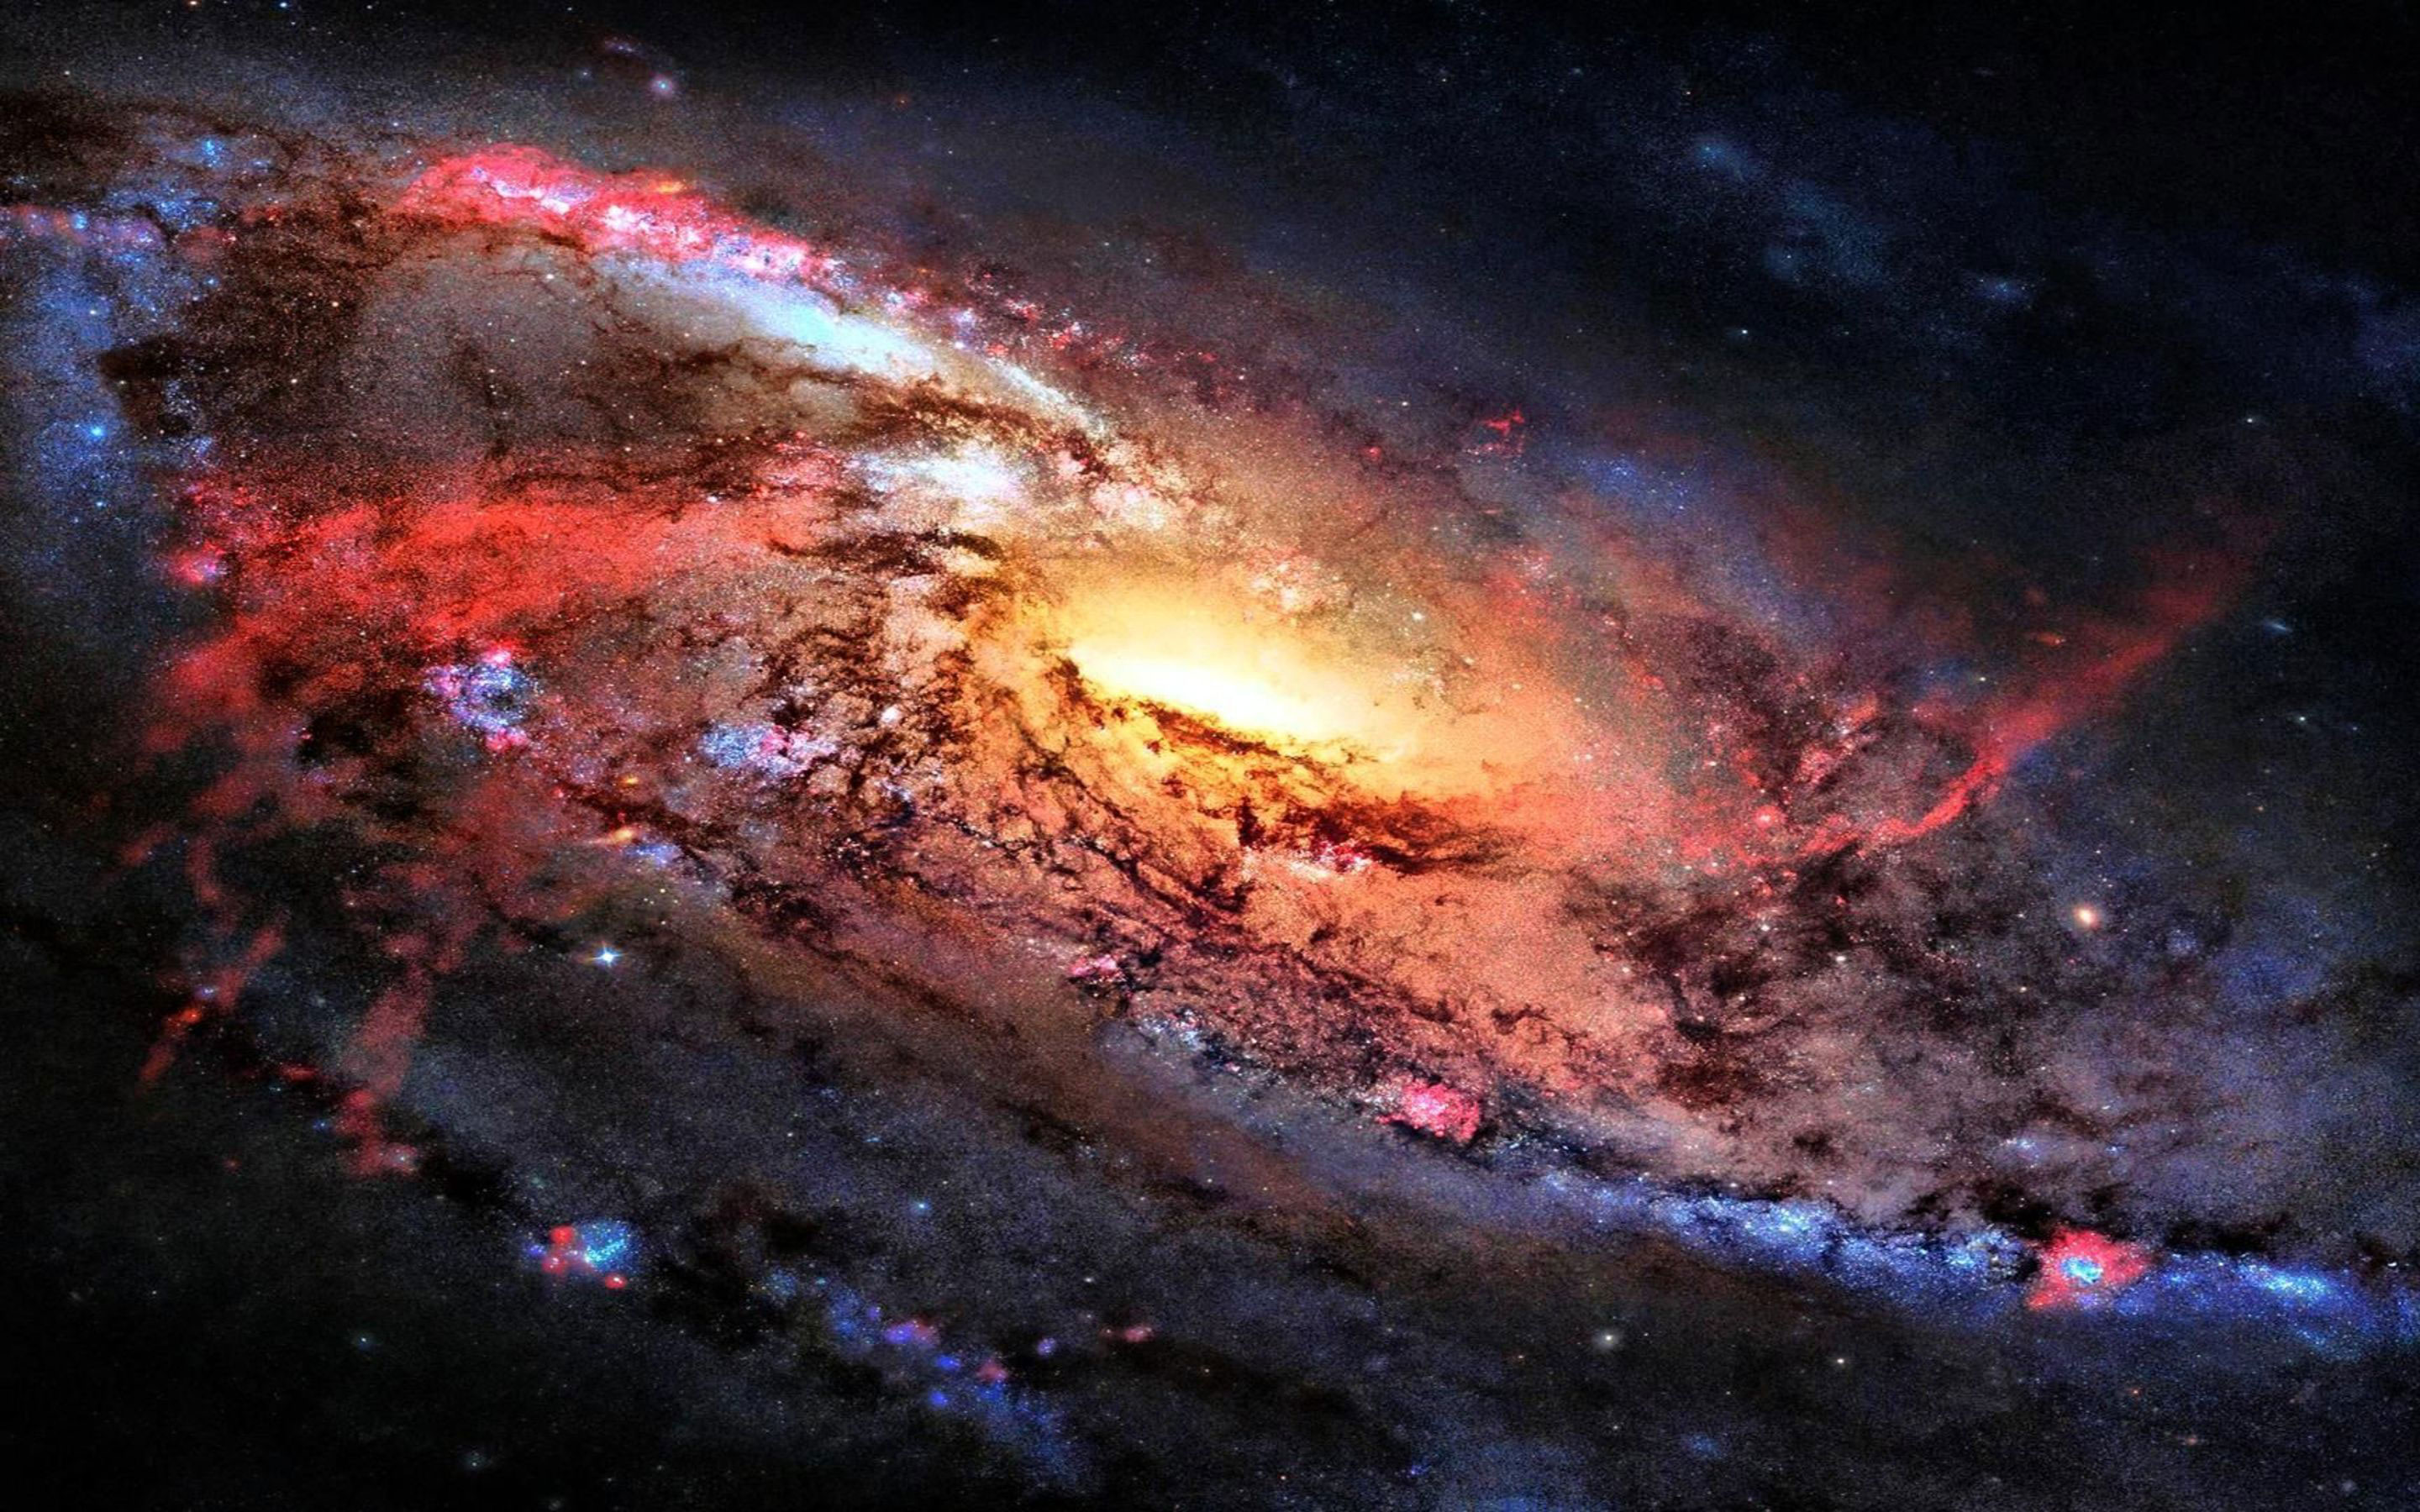 Bạn muốn sở hữu một bộ sưu tập các hình nền thiên hà thật đẹp mắt để trang trí desktop của mình? Chúng tôi có 40 hình nền thiên hà siêu nét với độ phân giải [2880x1800] dành cho Windows